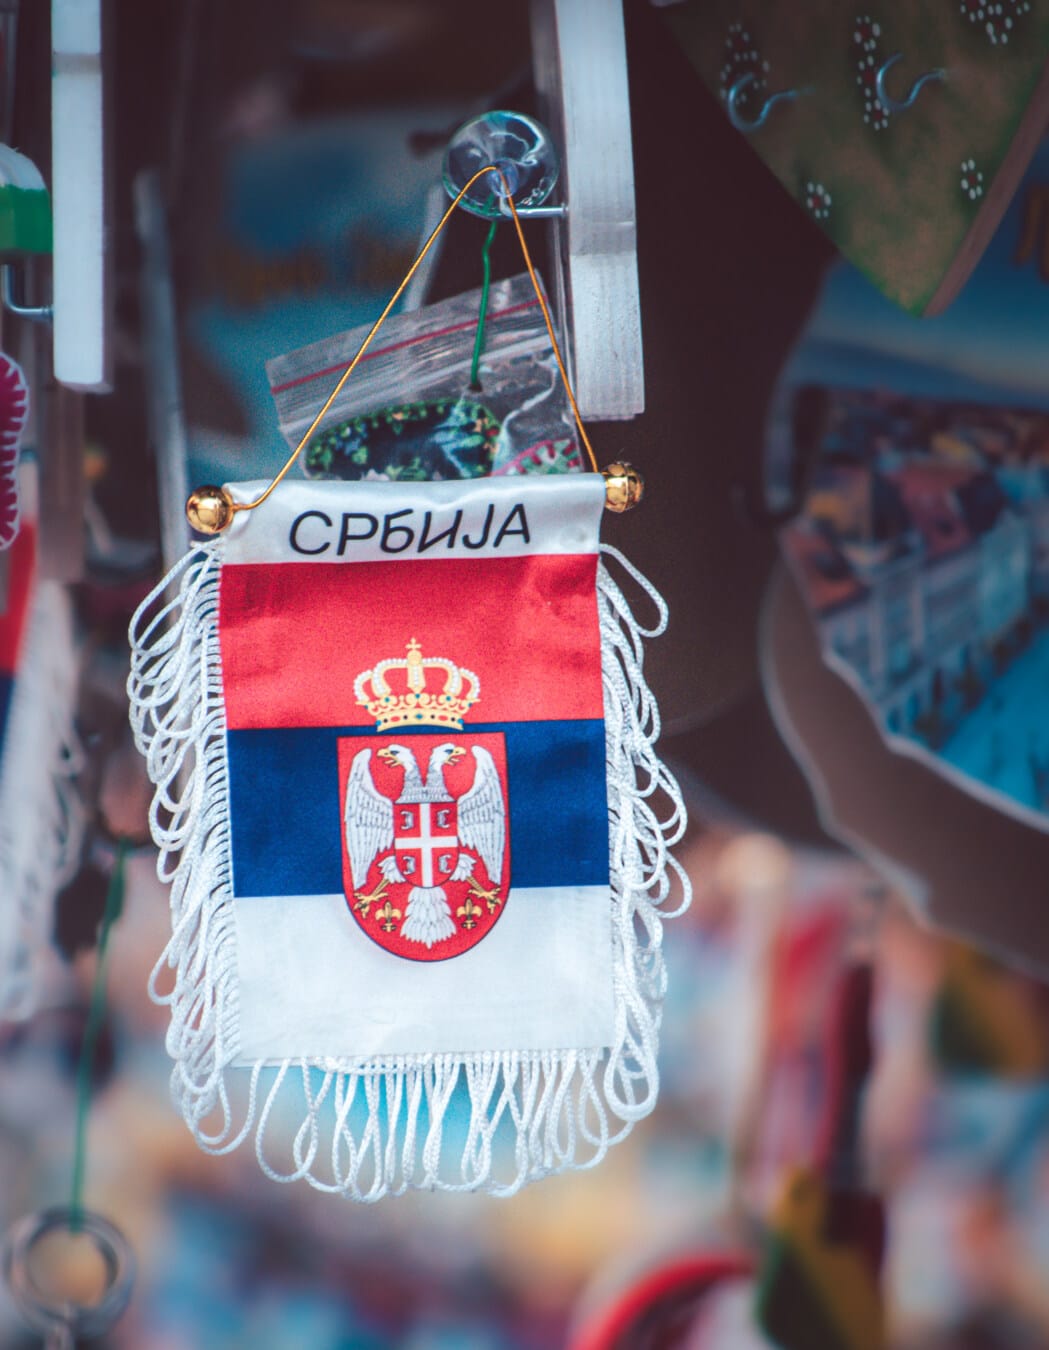 висящи, Сърбия, флаг, сувенири, носталгия, туристическа атракция, пазаруване, улица, пазар, традиционни